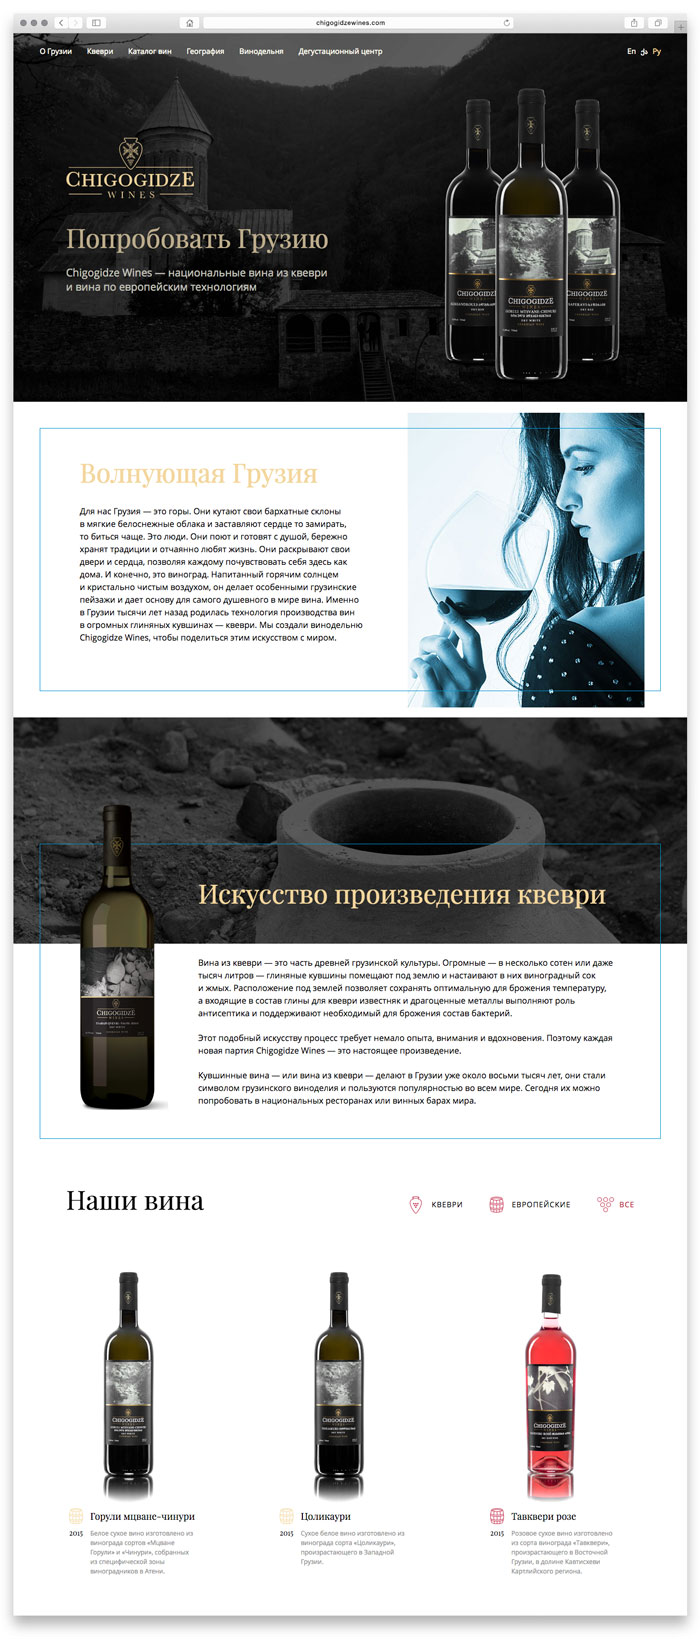 Промо-сайт производителя грузинского вина Chigogidze Wines